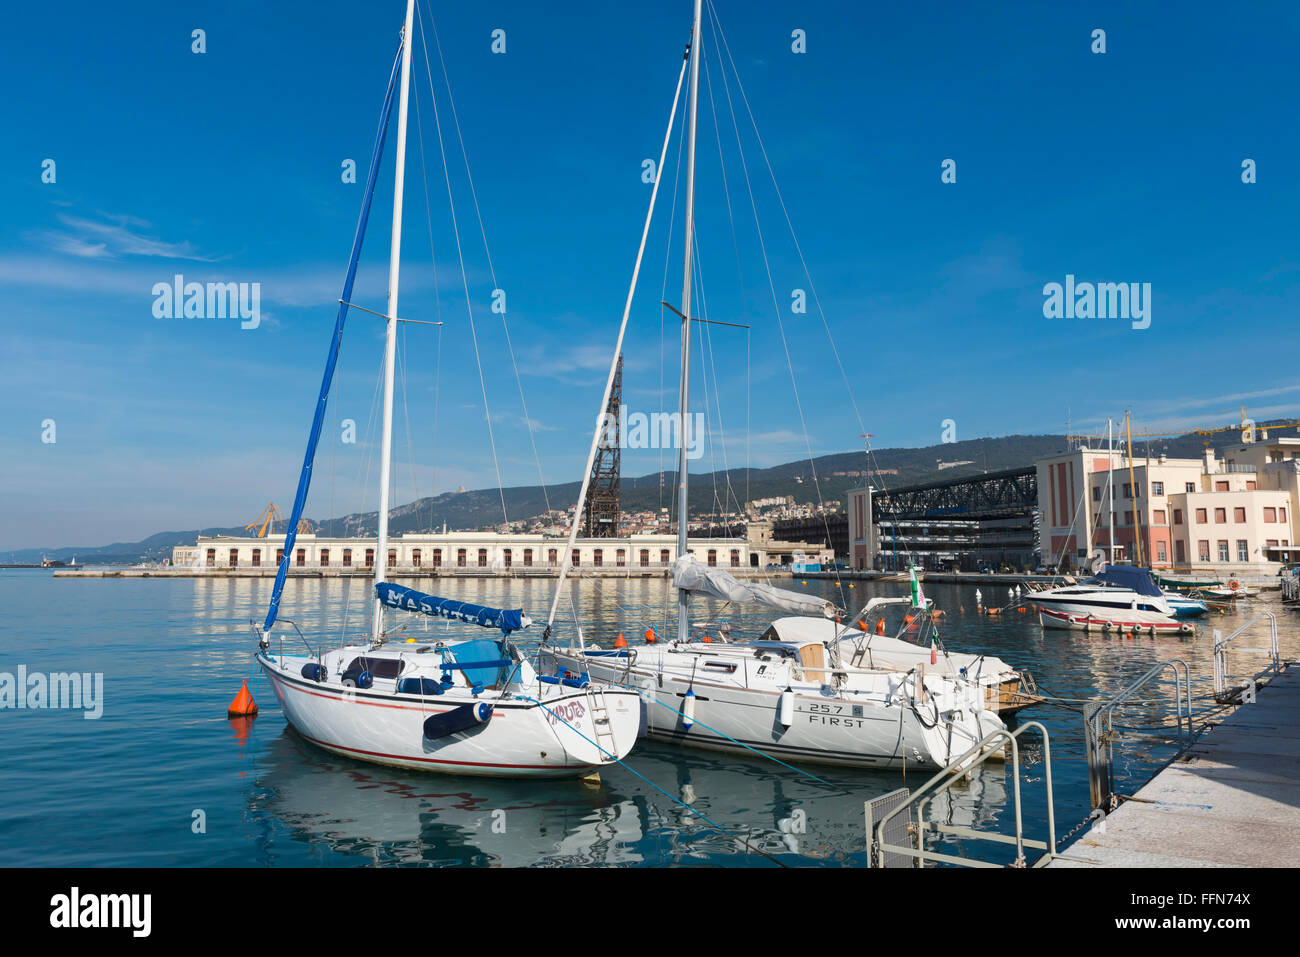 Le front de mer, Trieste, Italie, Europe Banque D'Images